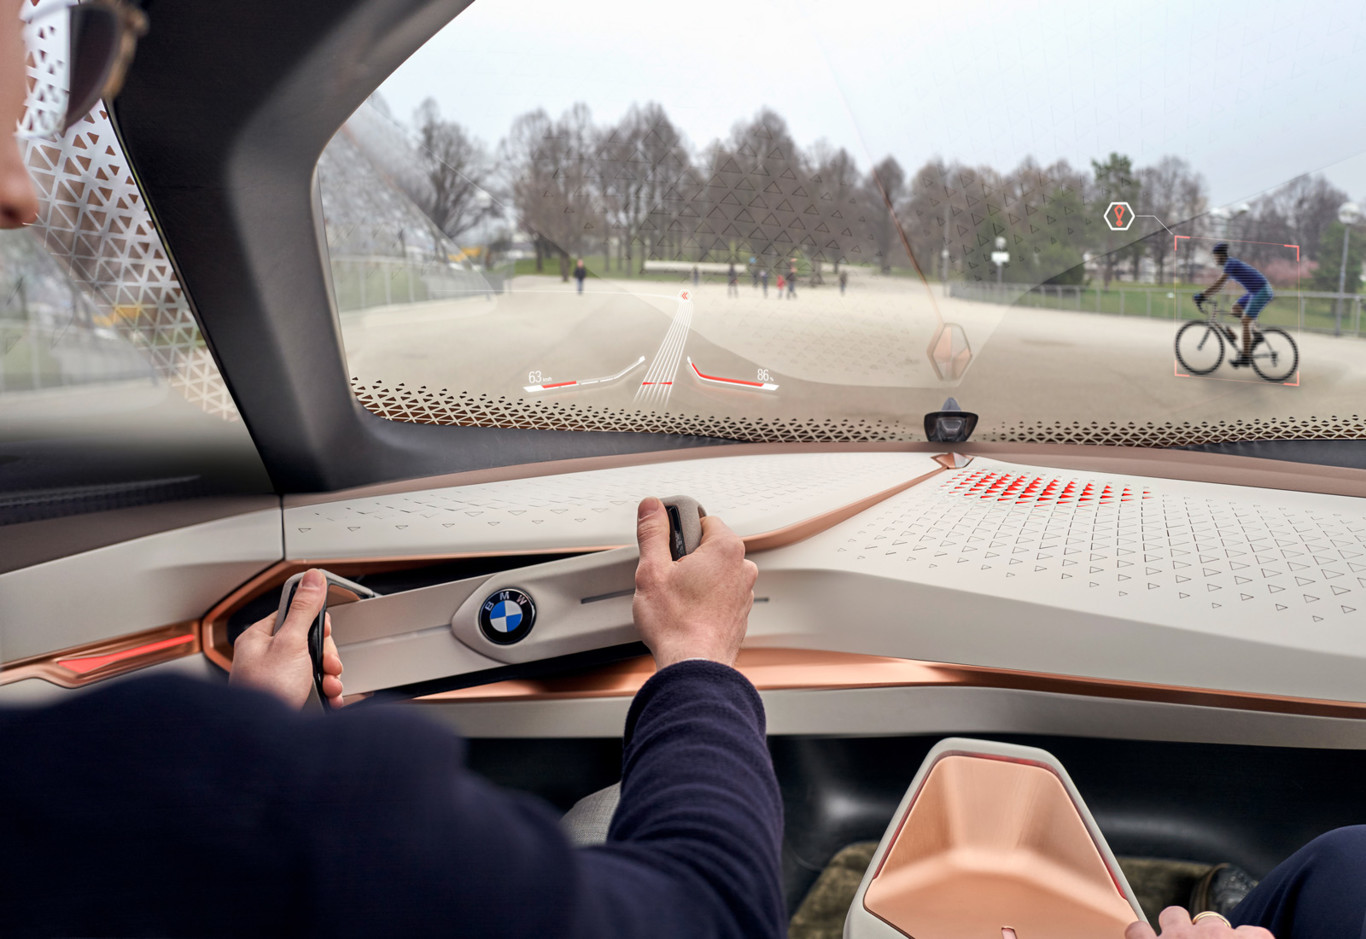 BMW Vision Next 100: ¿te gustará conducir en el futuro?